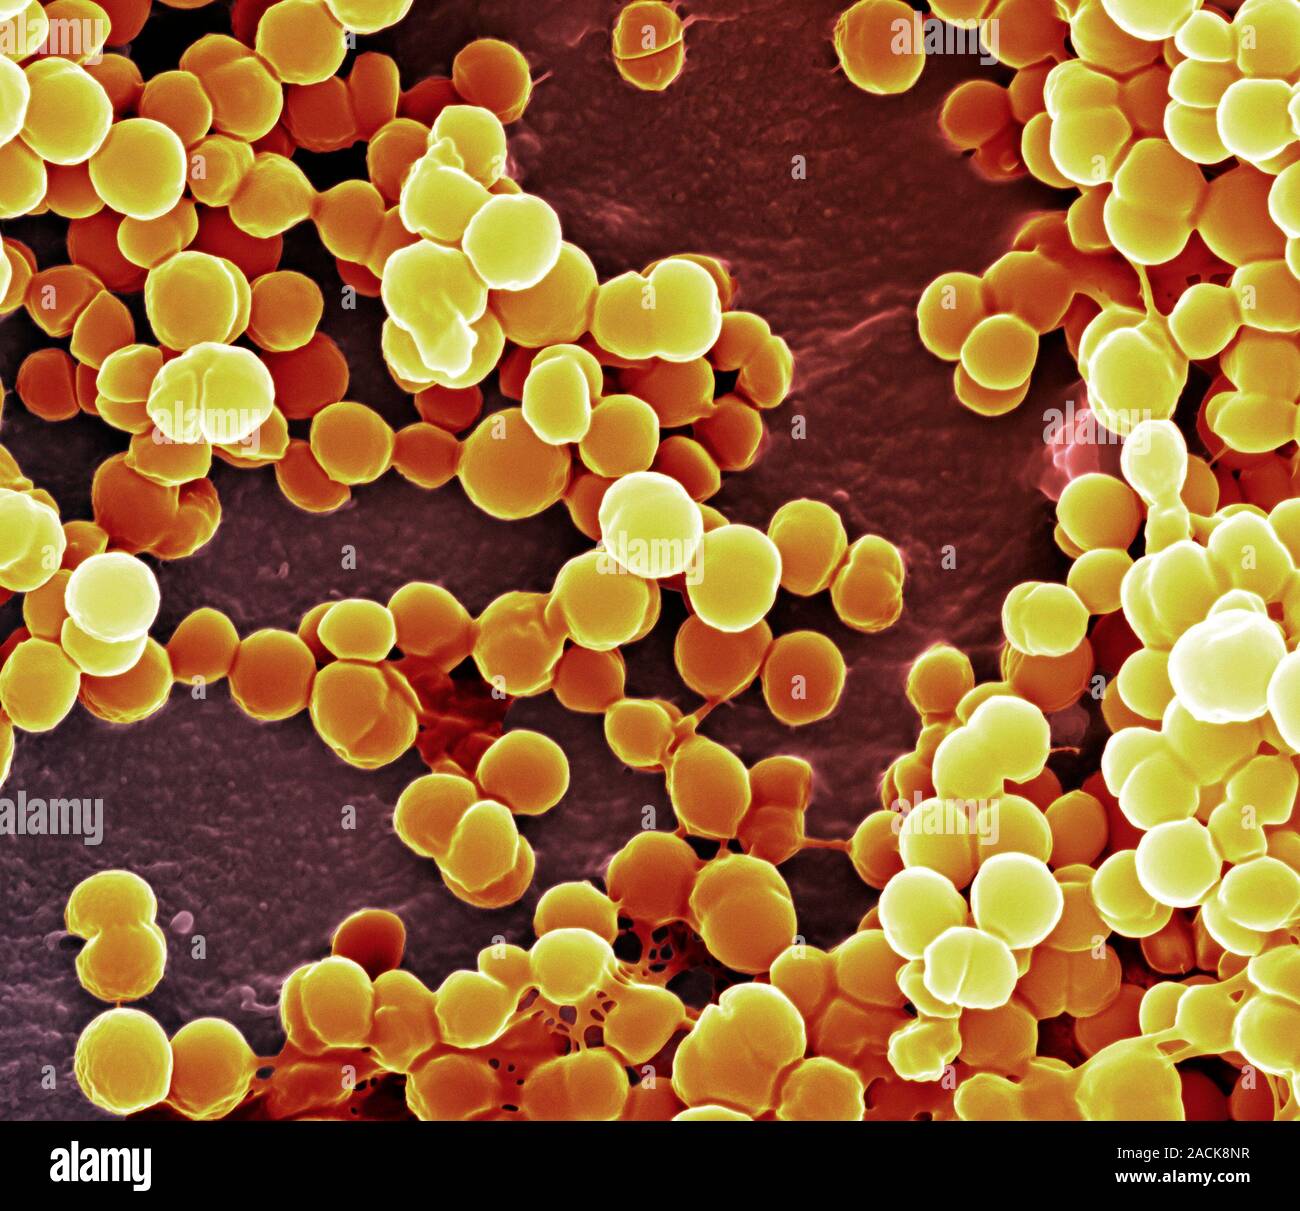 Staphylococcus aureus золотистый стафилококк. Метициллин-резистентный золотистый стафилококк. Стафилококк золотистый Staphylococcus aureus. Бактерия стафилококк ауреус. Стафилококк ауреус под микроскопом.